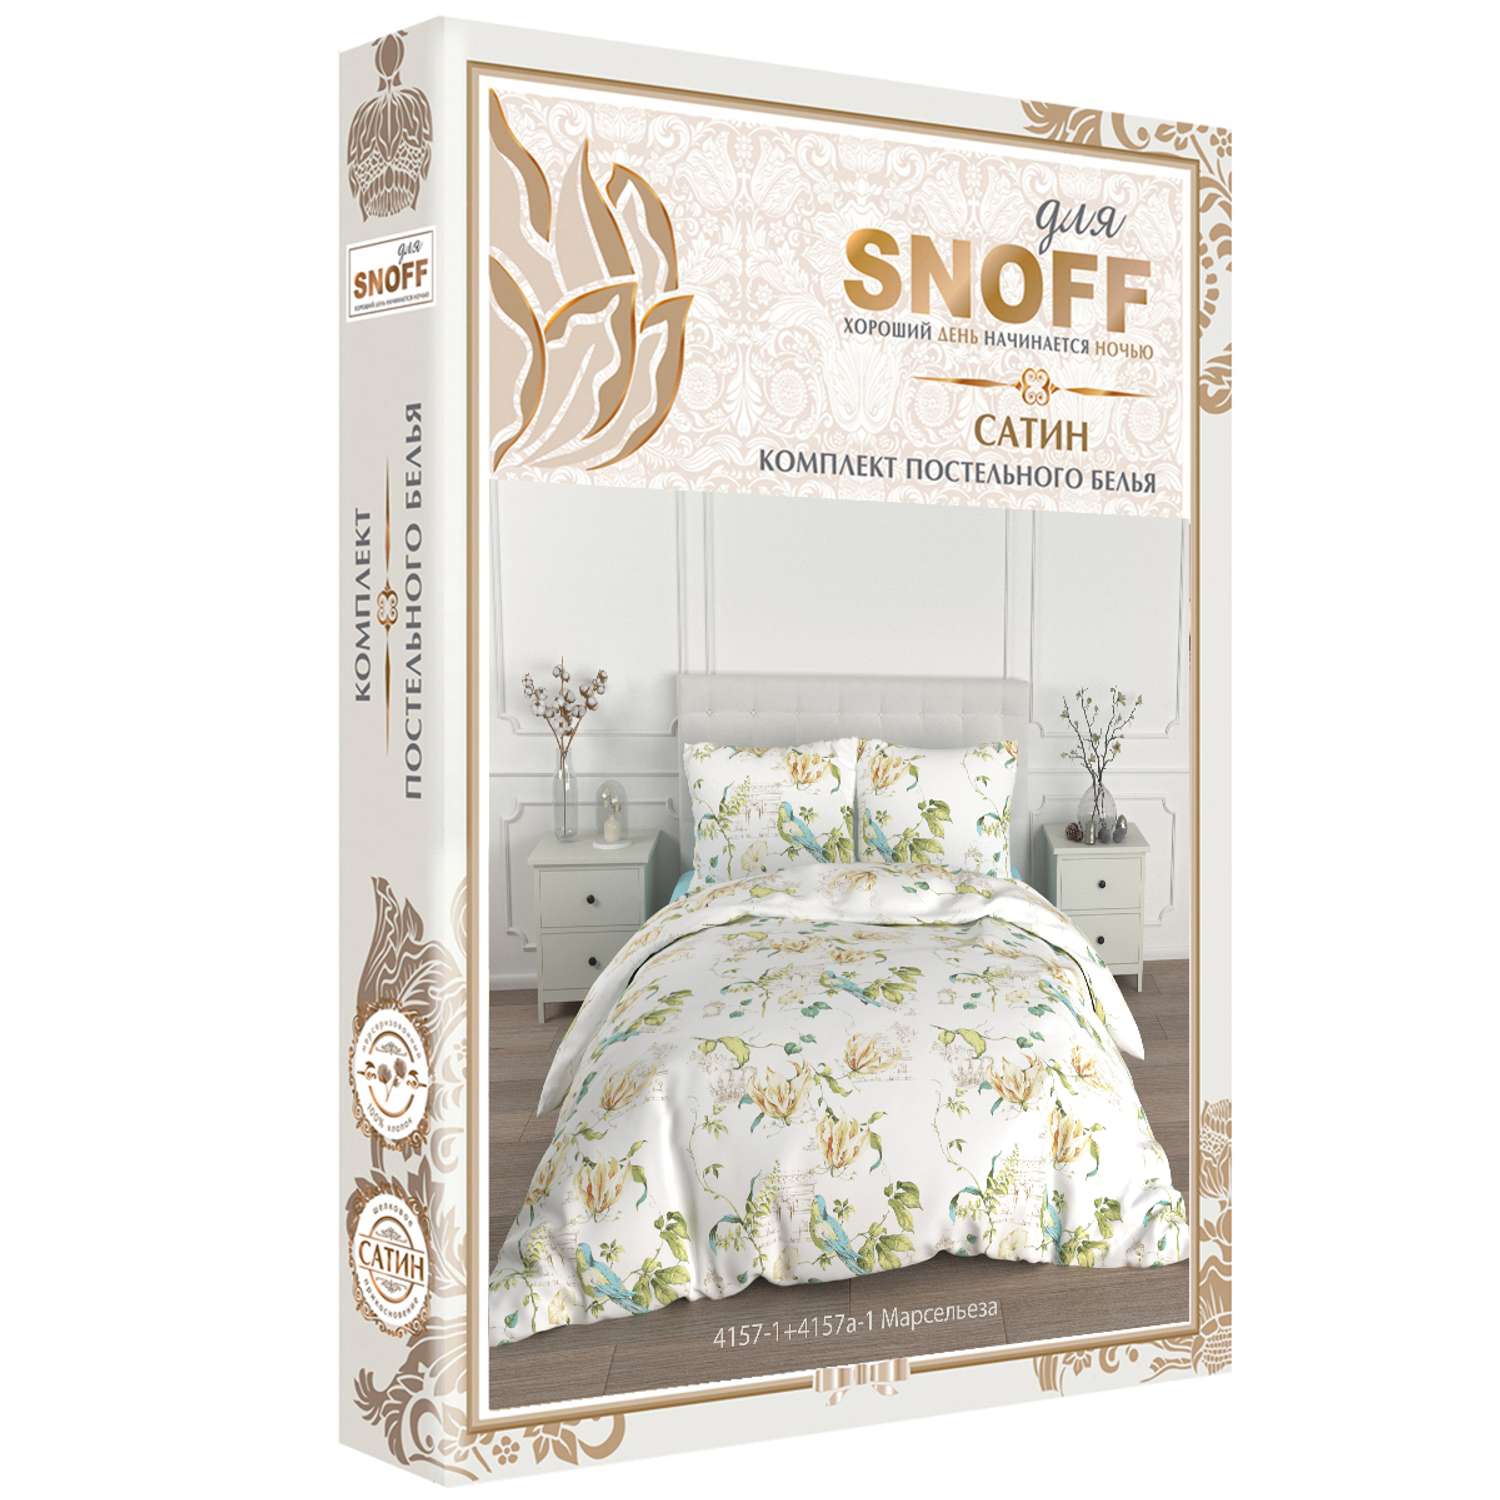 Комплект постельного белья для SNOFF Марсельеза 1.5спальный сатин - фото 6